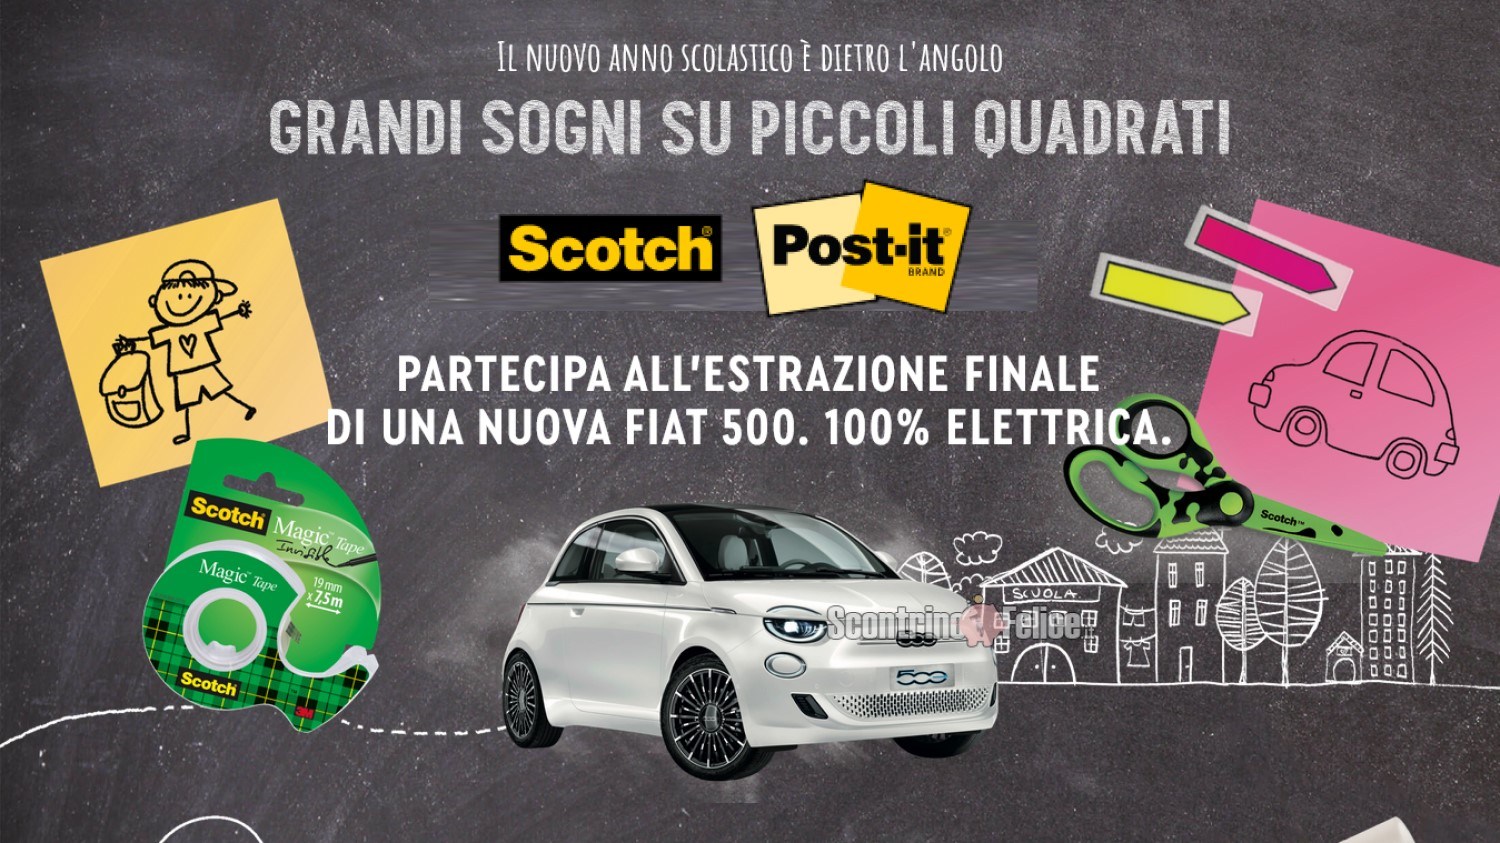 Concorso Post-it e Scotch "Grandi Sogni Su Piccoli Quadrati": vinci 1 Fiat 500 elettrica!